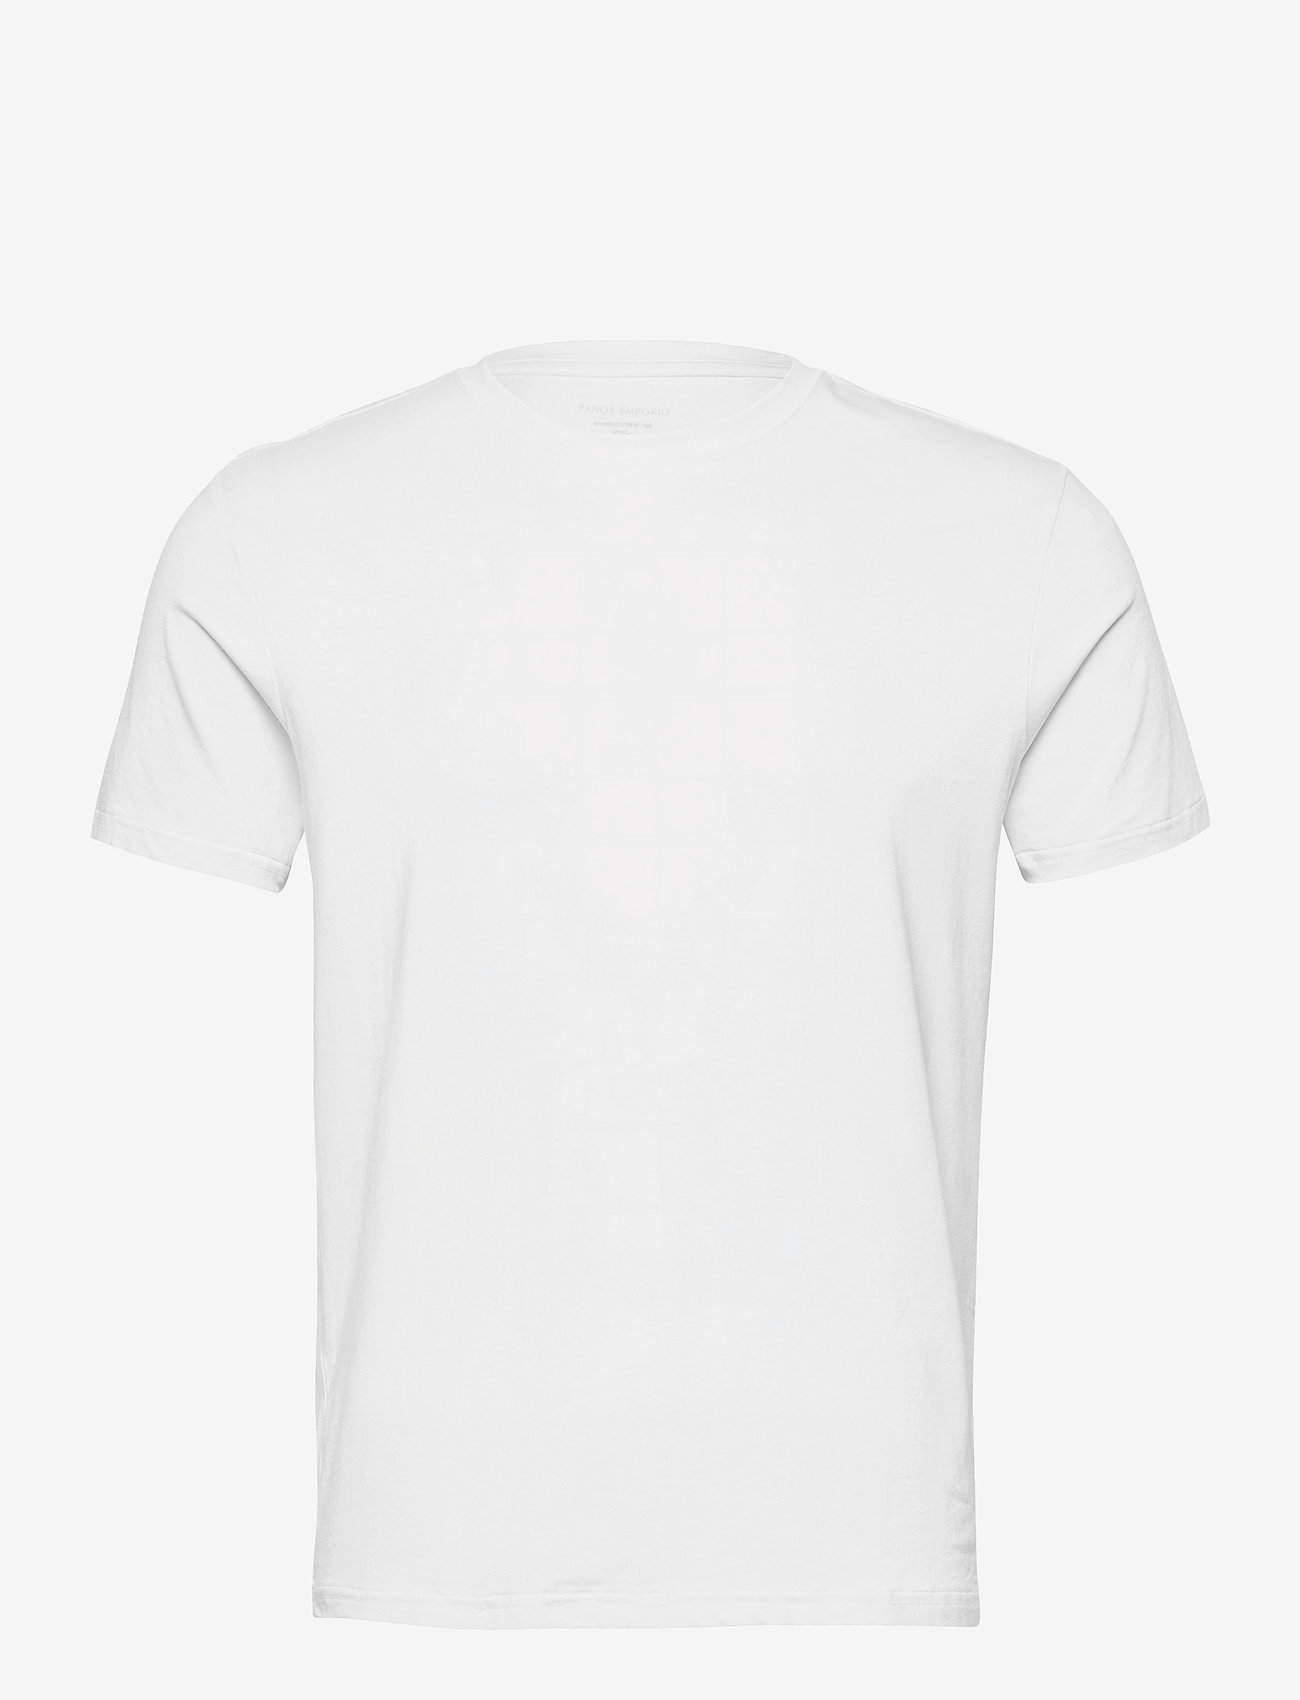 Panos Emporio - PANOS EMPORIO BAMBOO/COTTON TEE CREW - basic t-shirts - white - 1